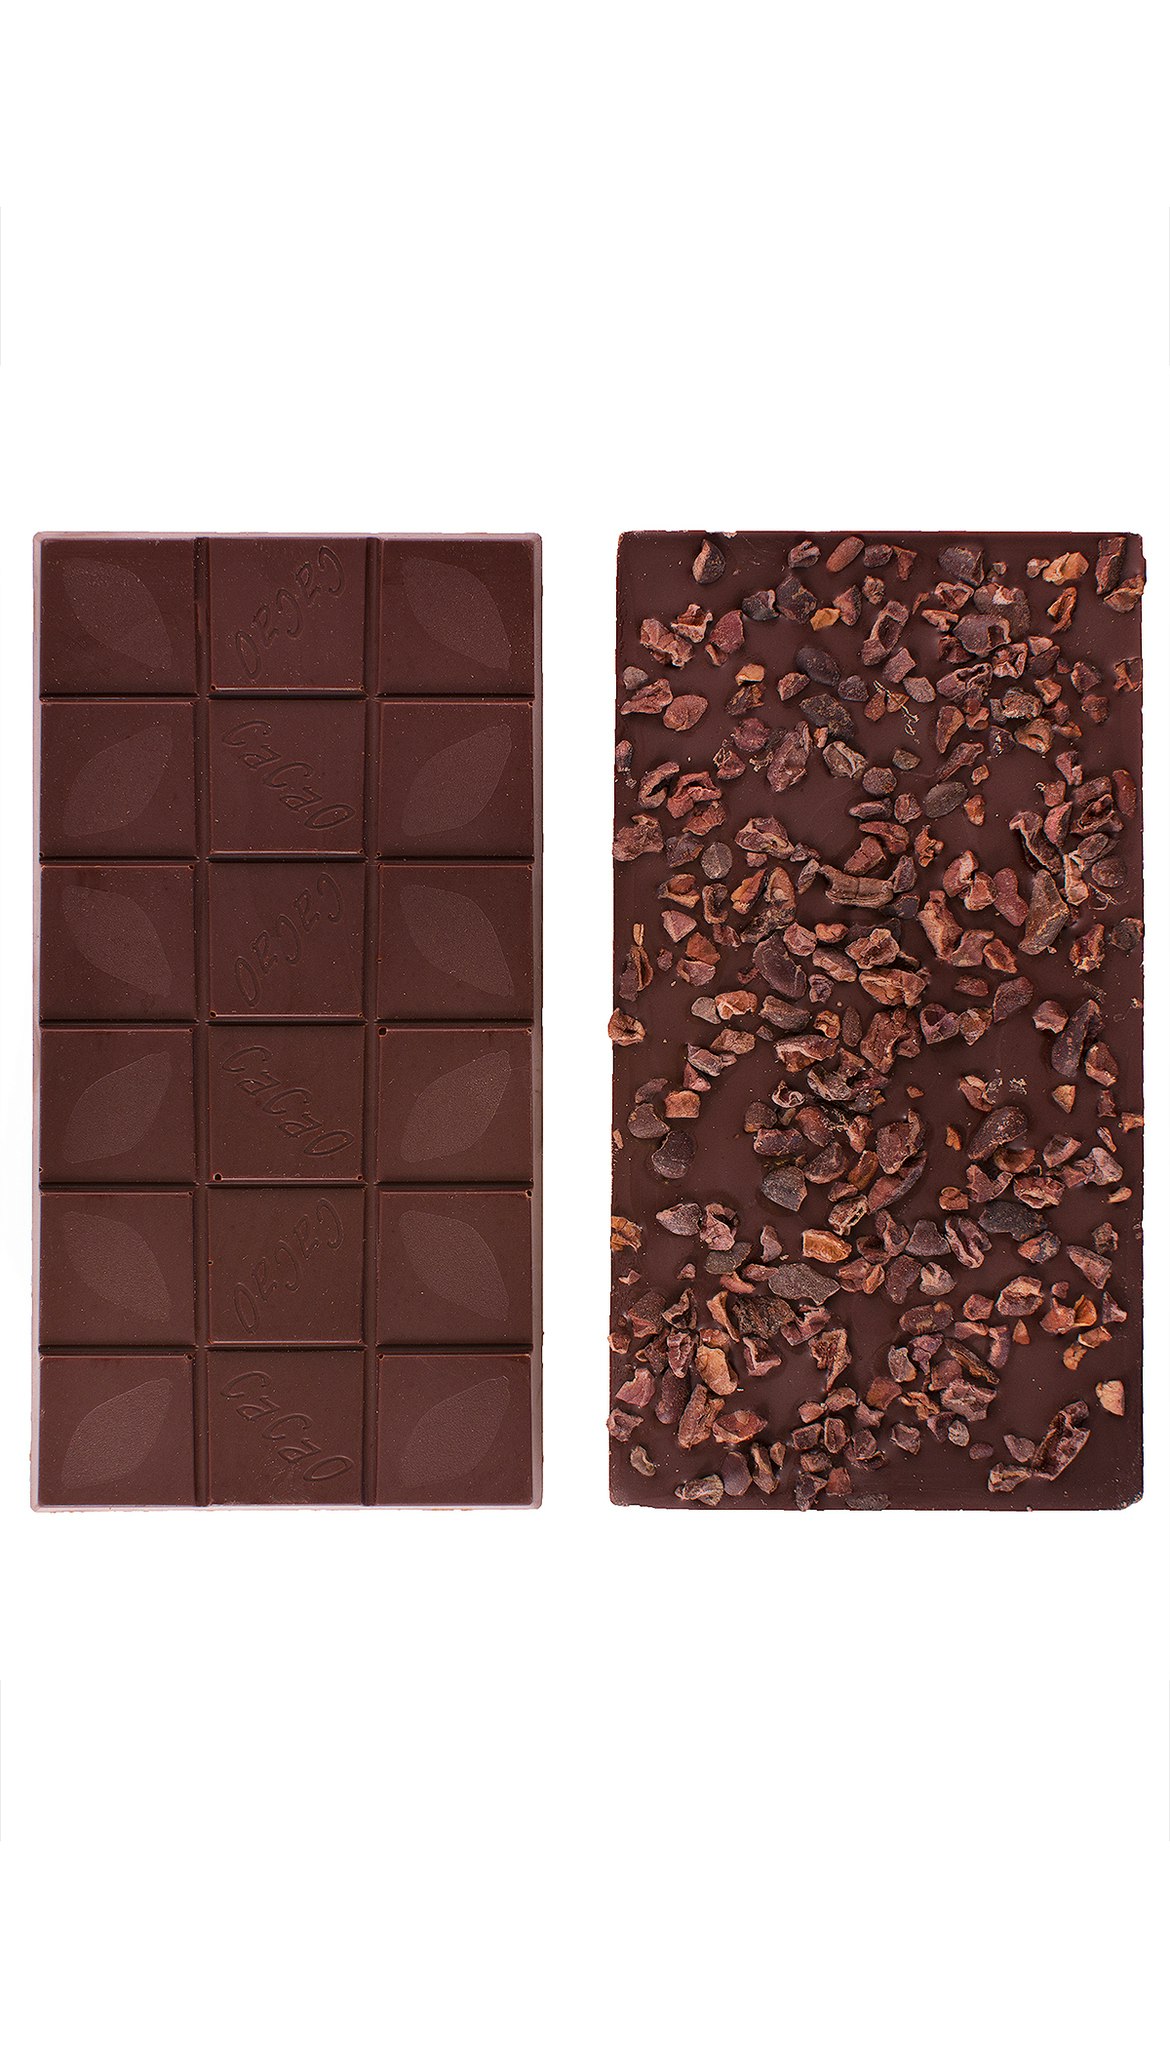 Vintage plantations choklad 65% med kakaonibs